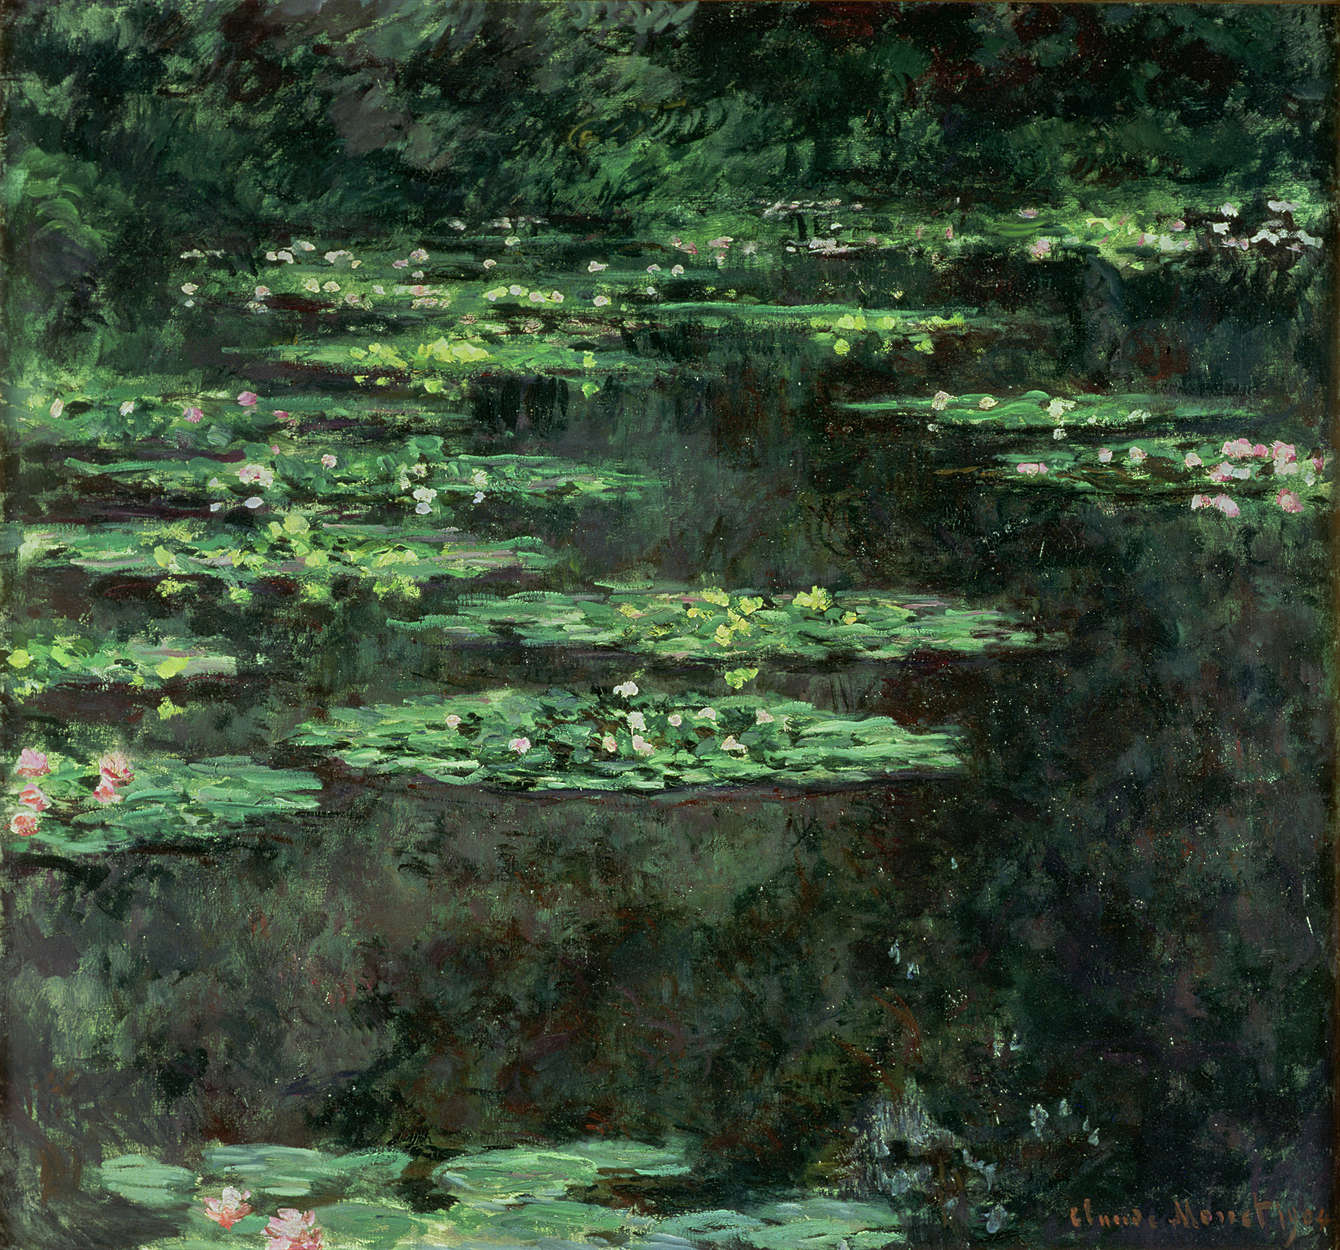             Fototapete "Seerosen" von Claude Monet
        